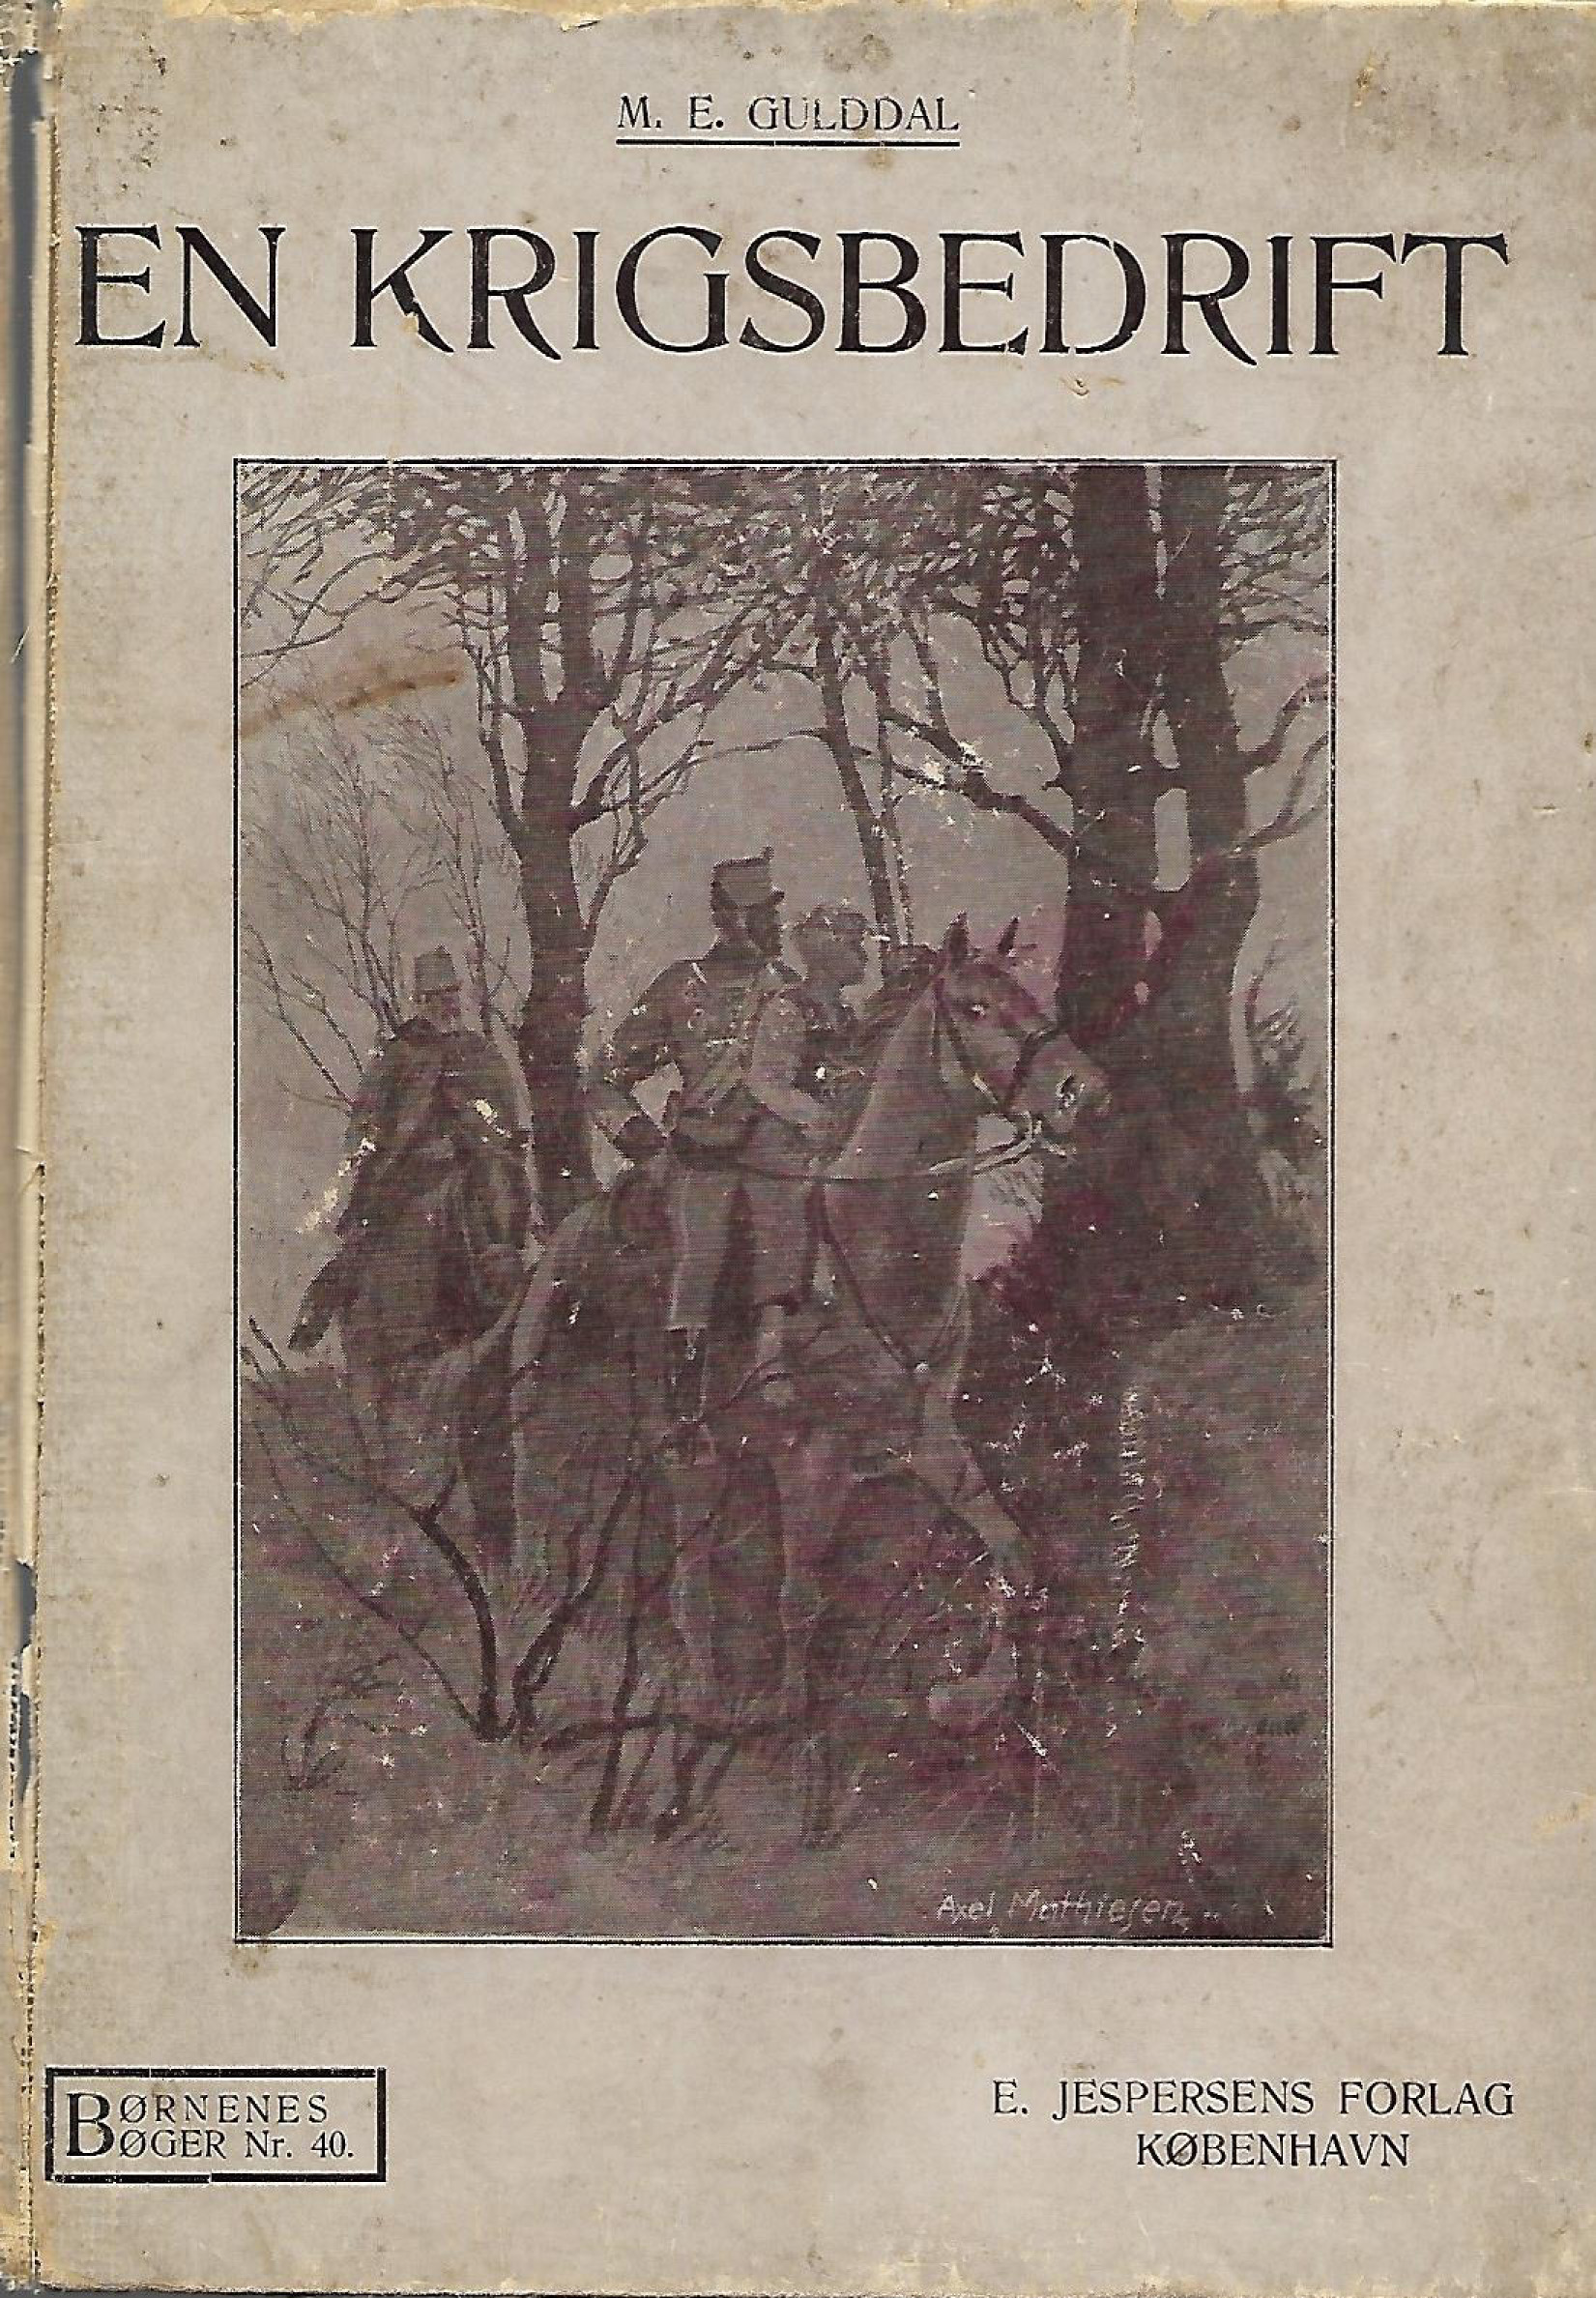 En krigsbedrift - M E Gulddal 1914-1